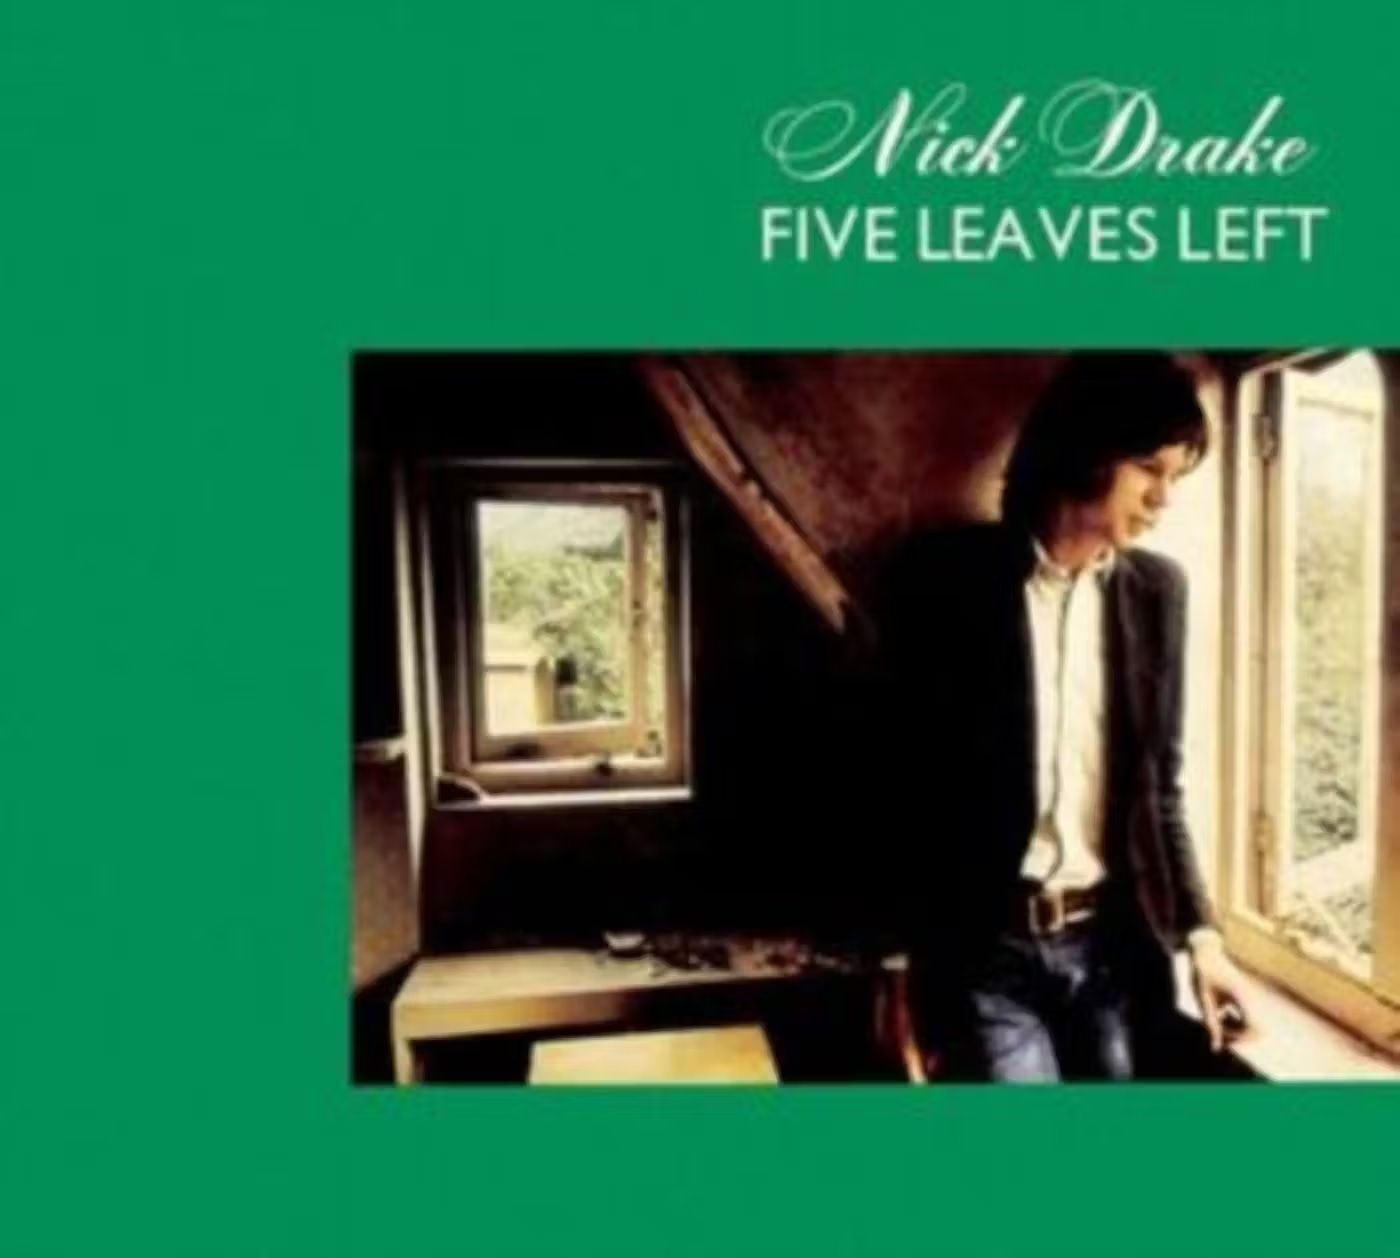 Drake, Nick - Five Leaves Left (2004 digipak reissue) - CD - New